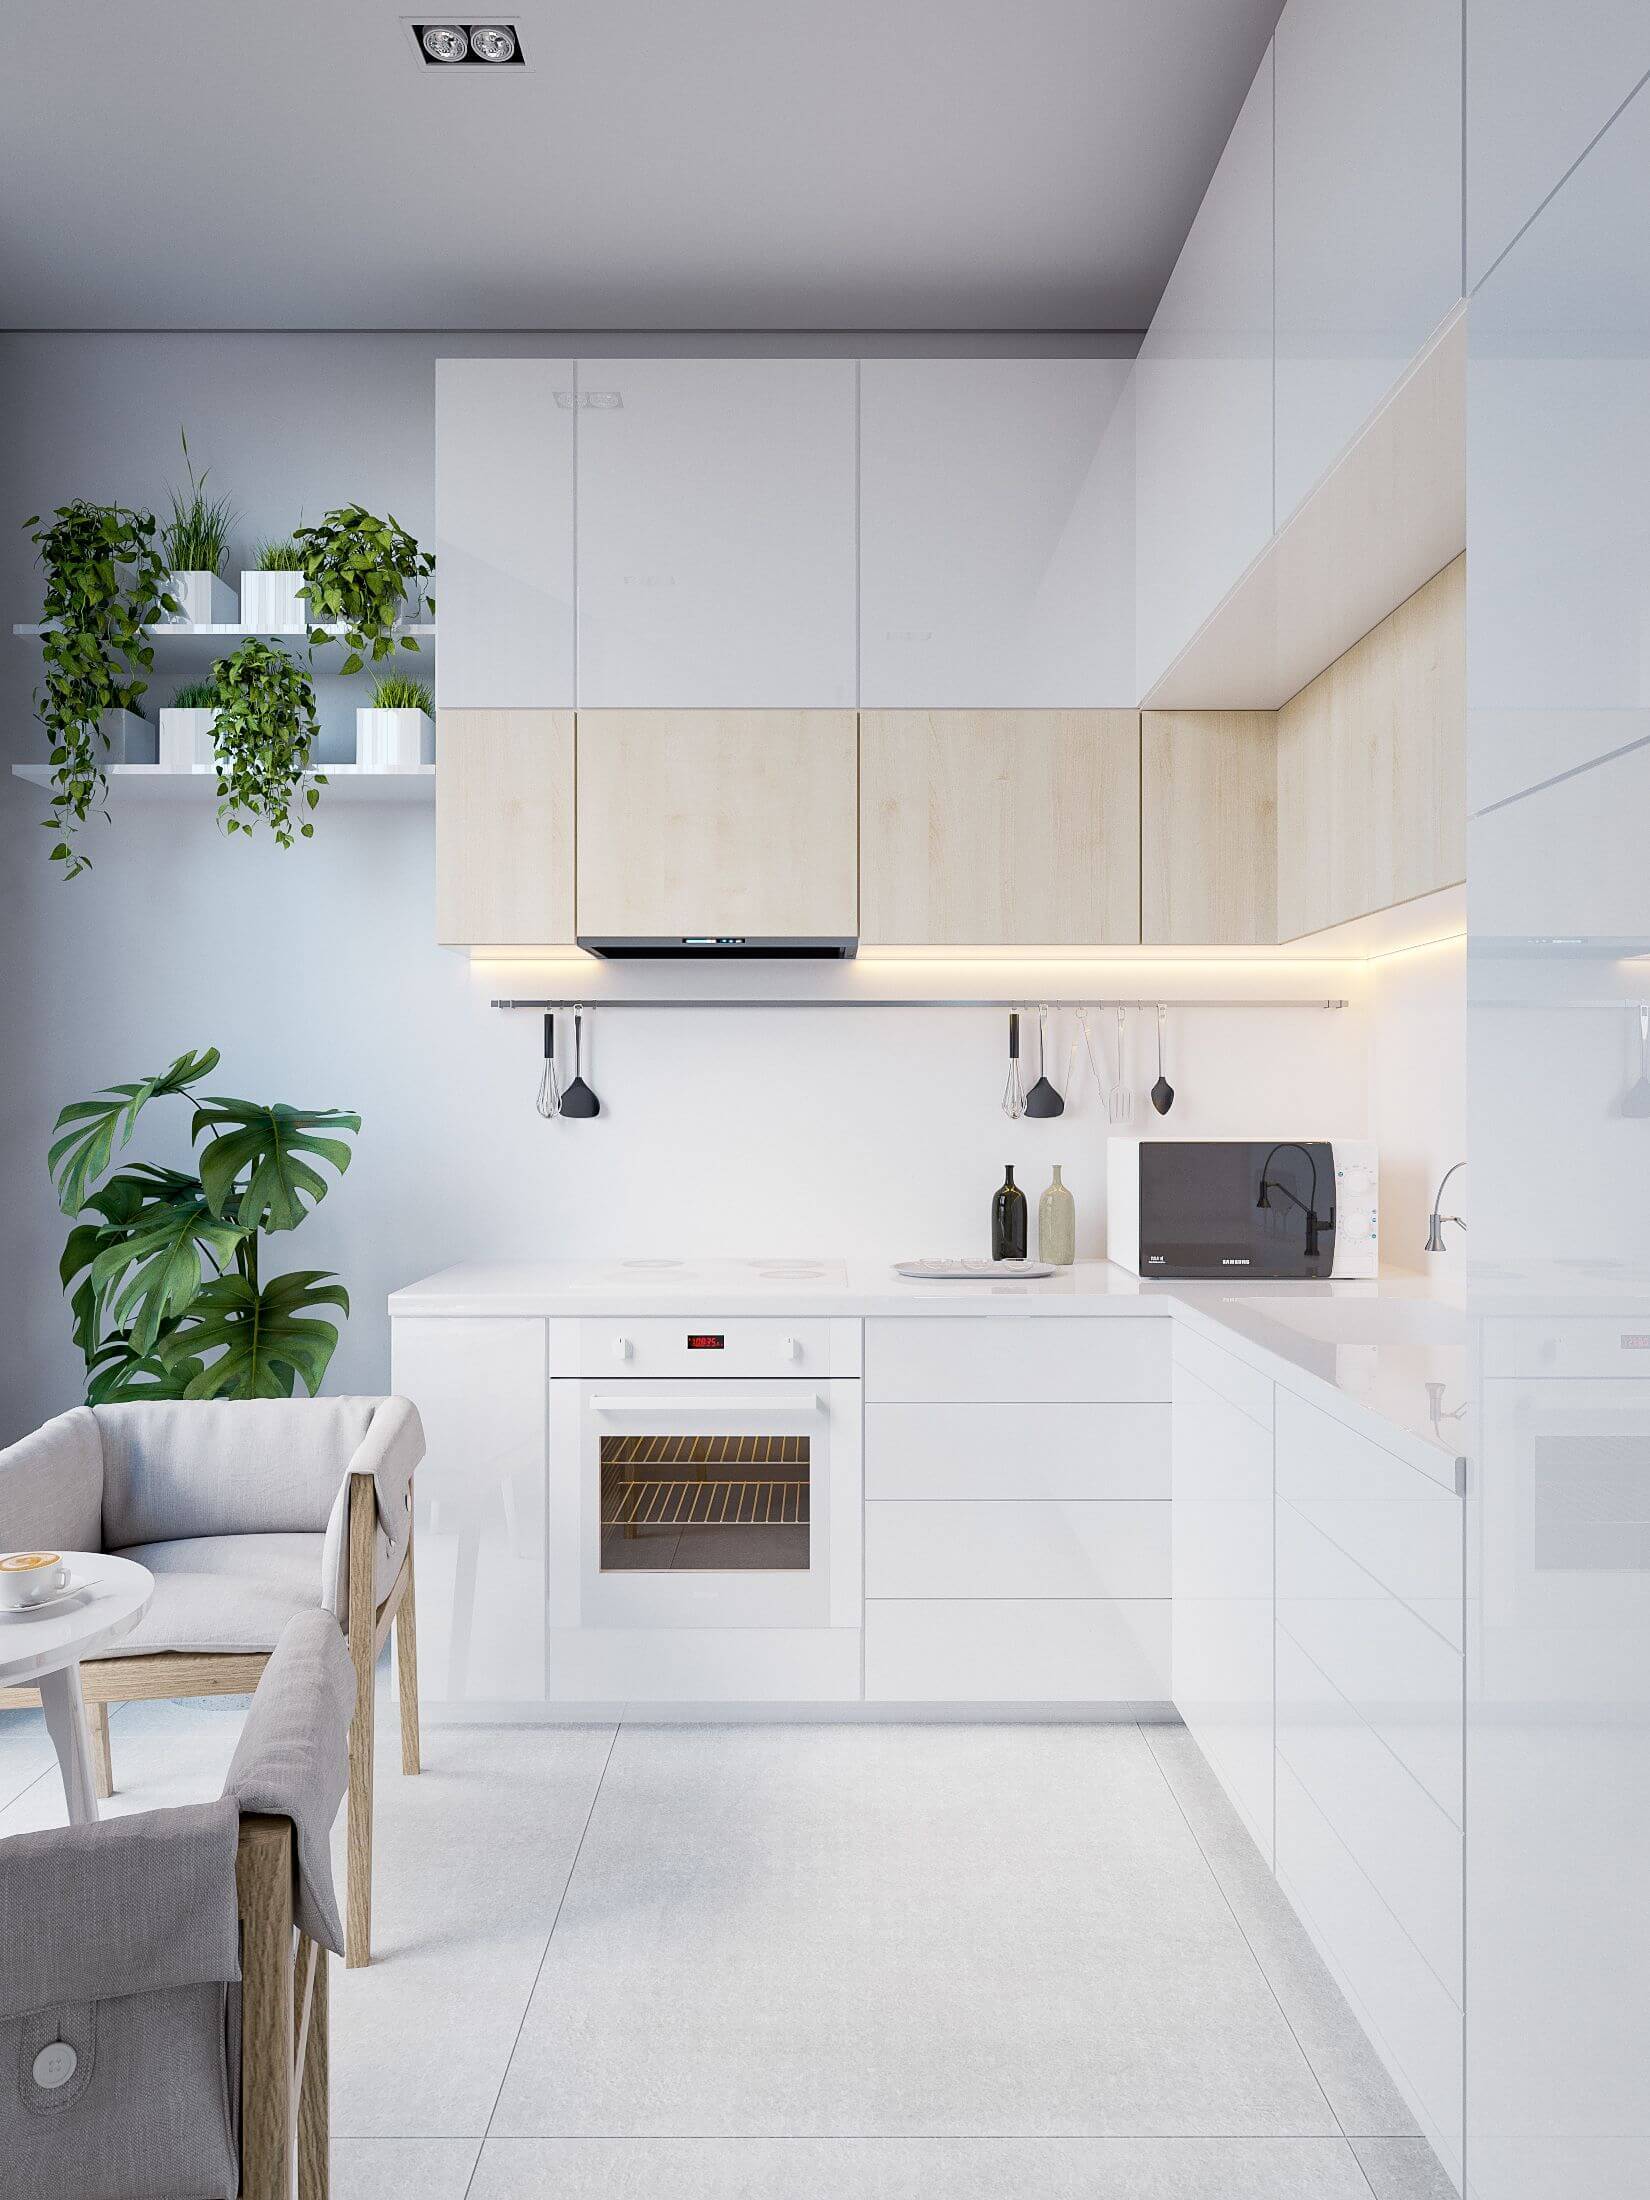 Gợi ý thiết kế phòng bếp theo Phong cách tối giản Minimalism